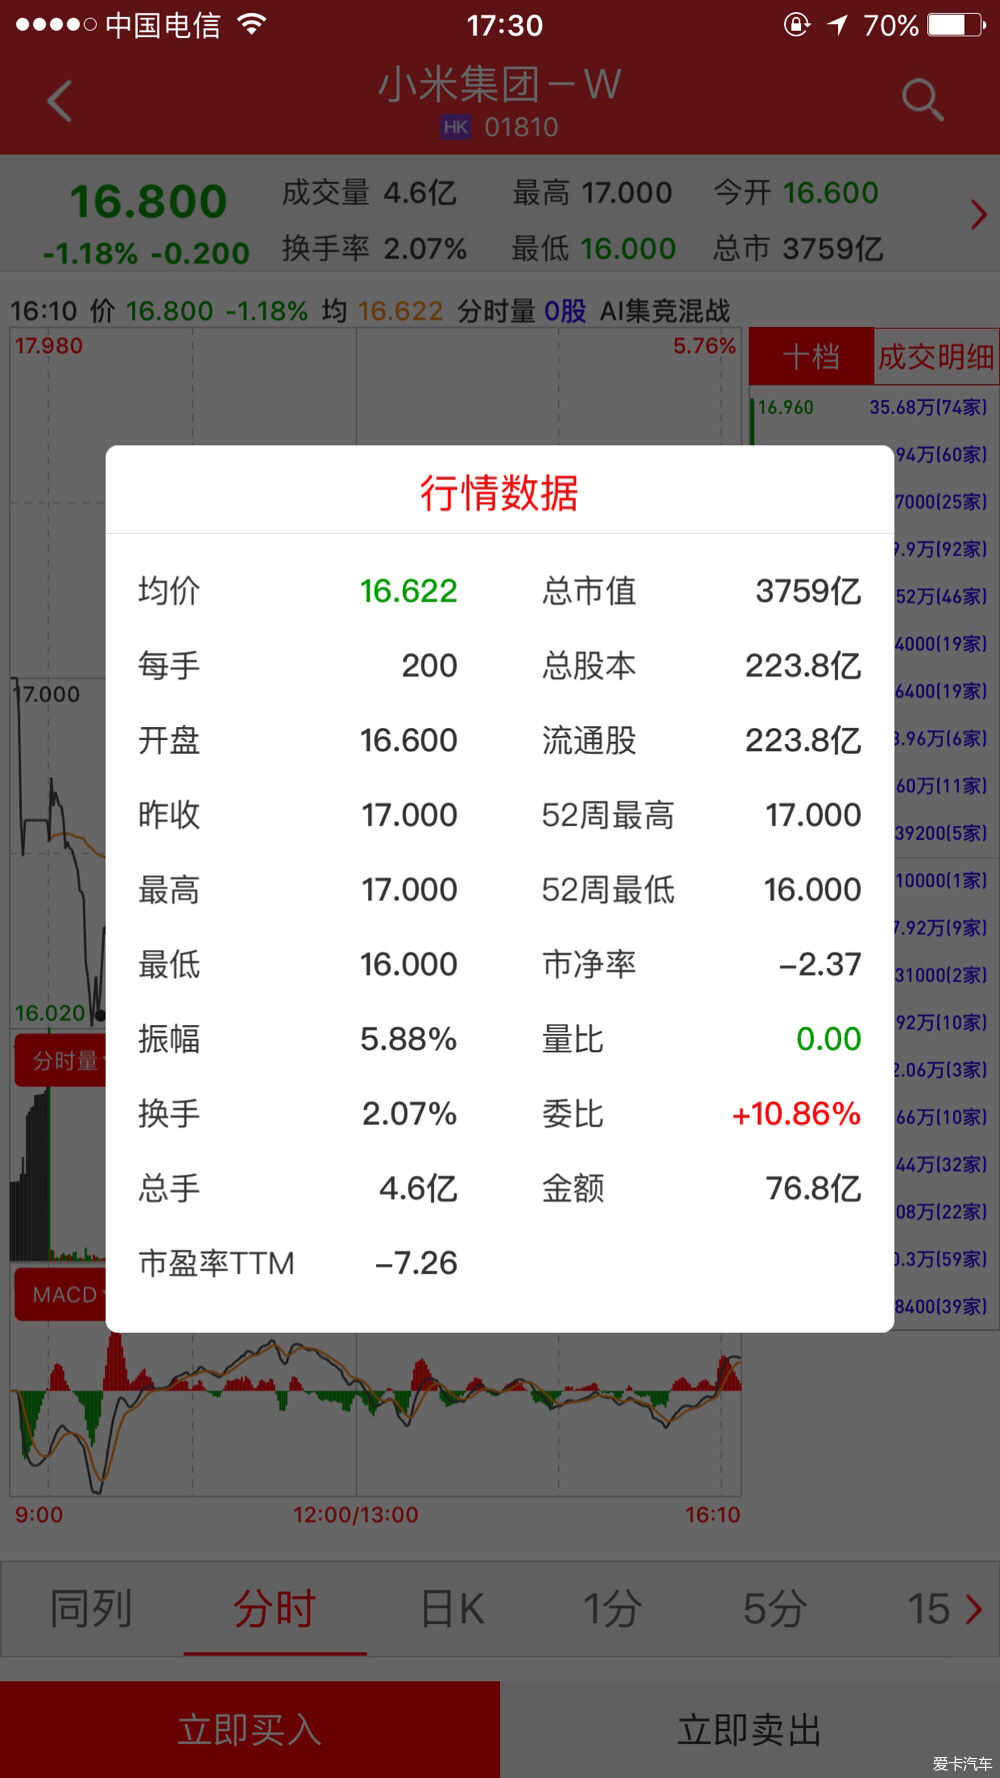 小米港交所正式上市:股票代码为01810 跌破发